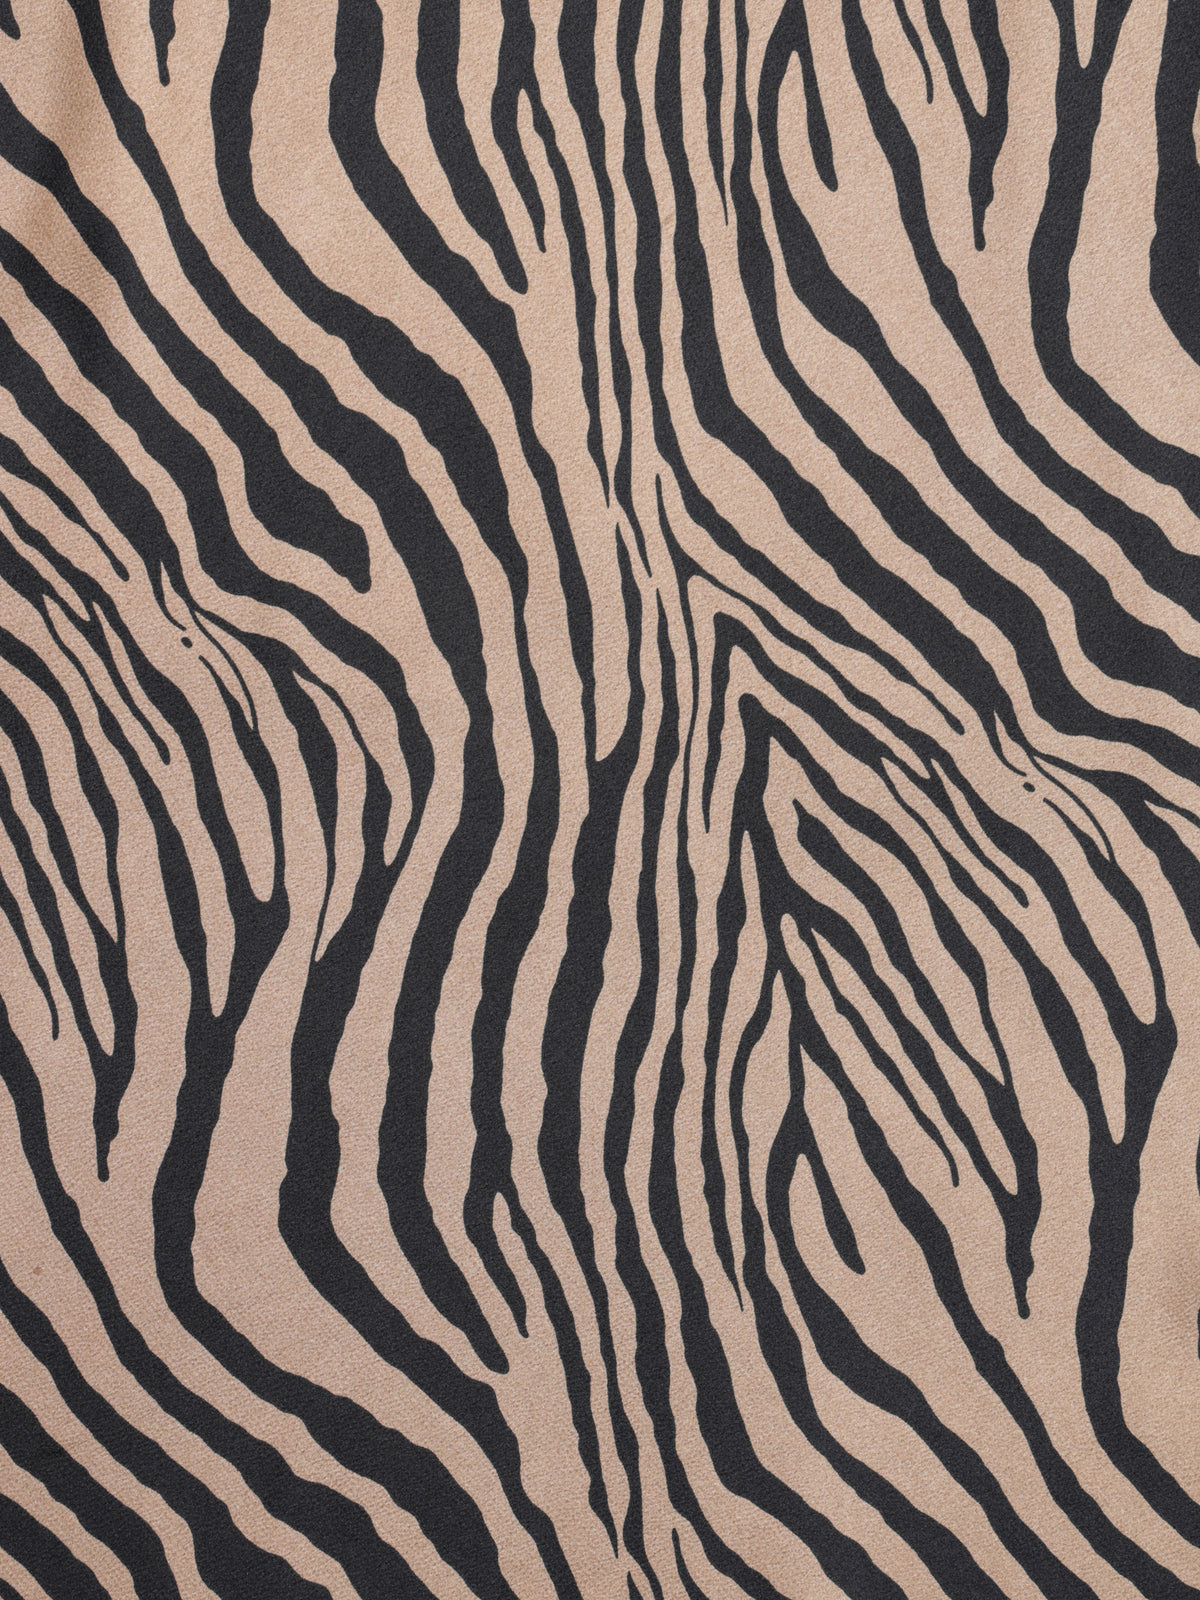 Leonie Satin Skirt in Zebra